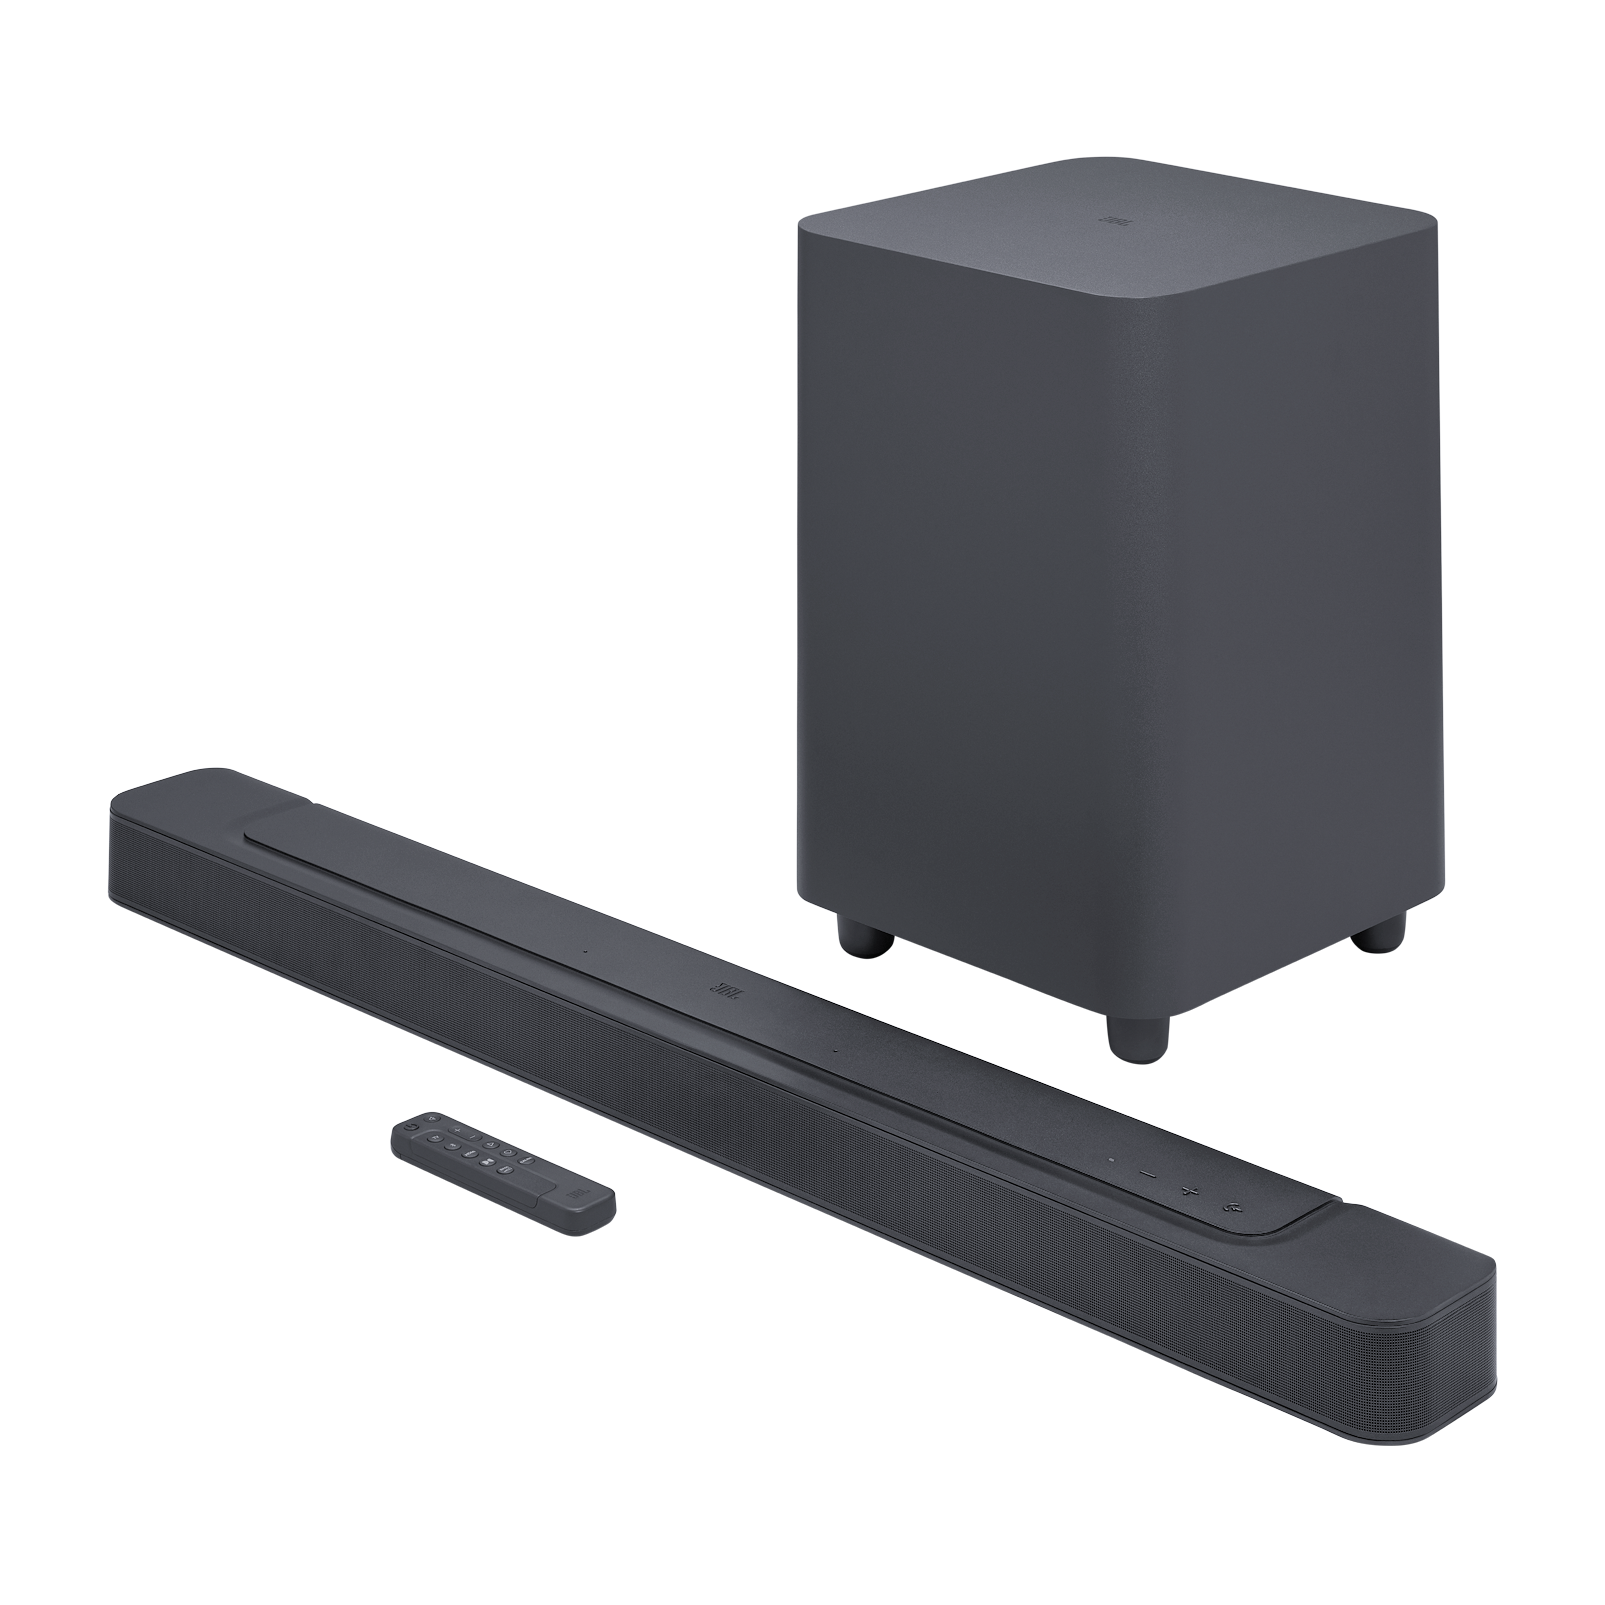 即納格安動作確認済 JBL サウンドバー ウーファー bar 2.1 Bluetooth ブルートゥース スピーカー 12101 スピーカー本体